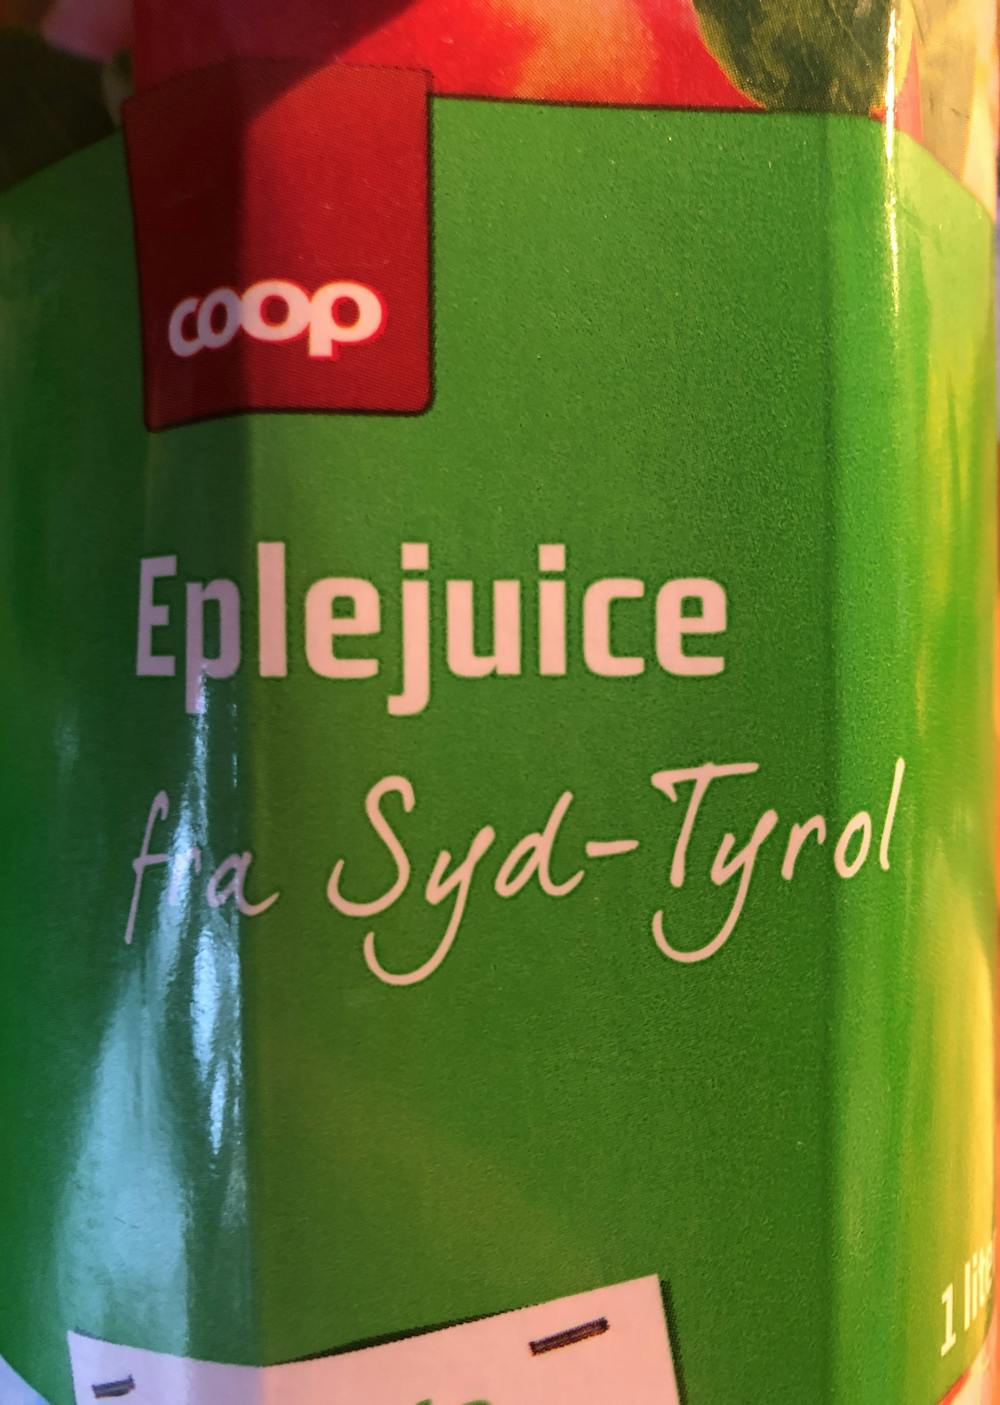 Eplejuice fra Syd-Tyrol, Coop